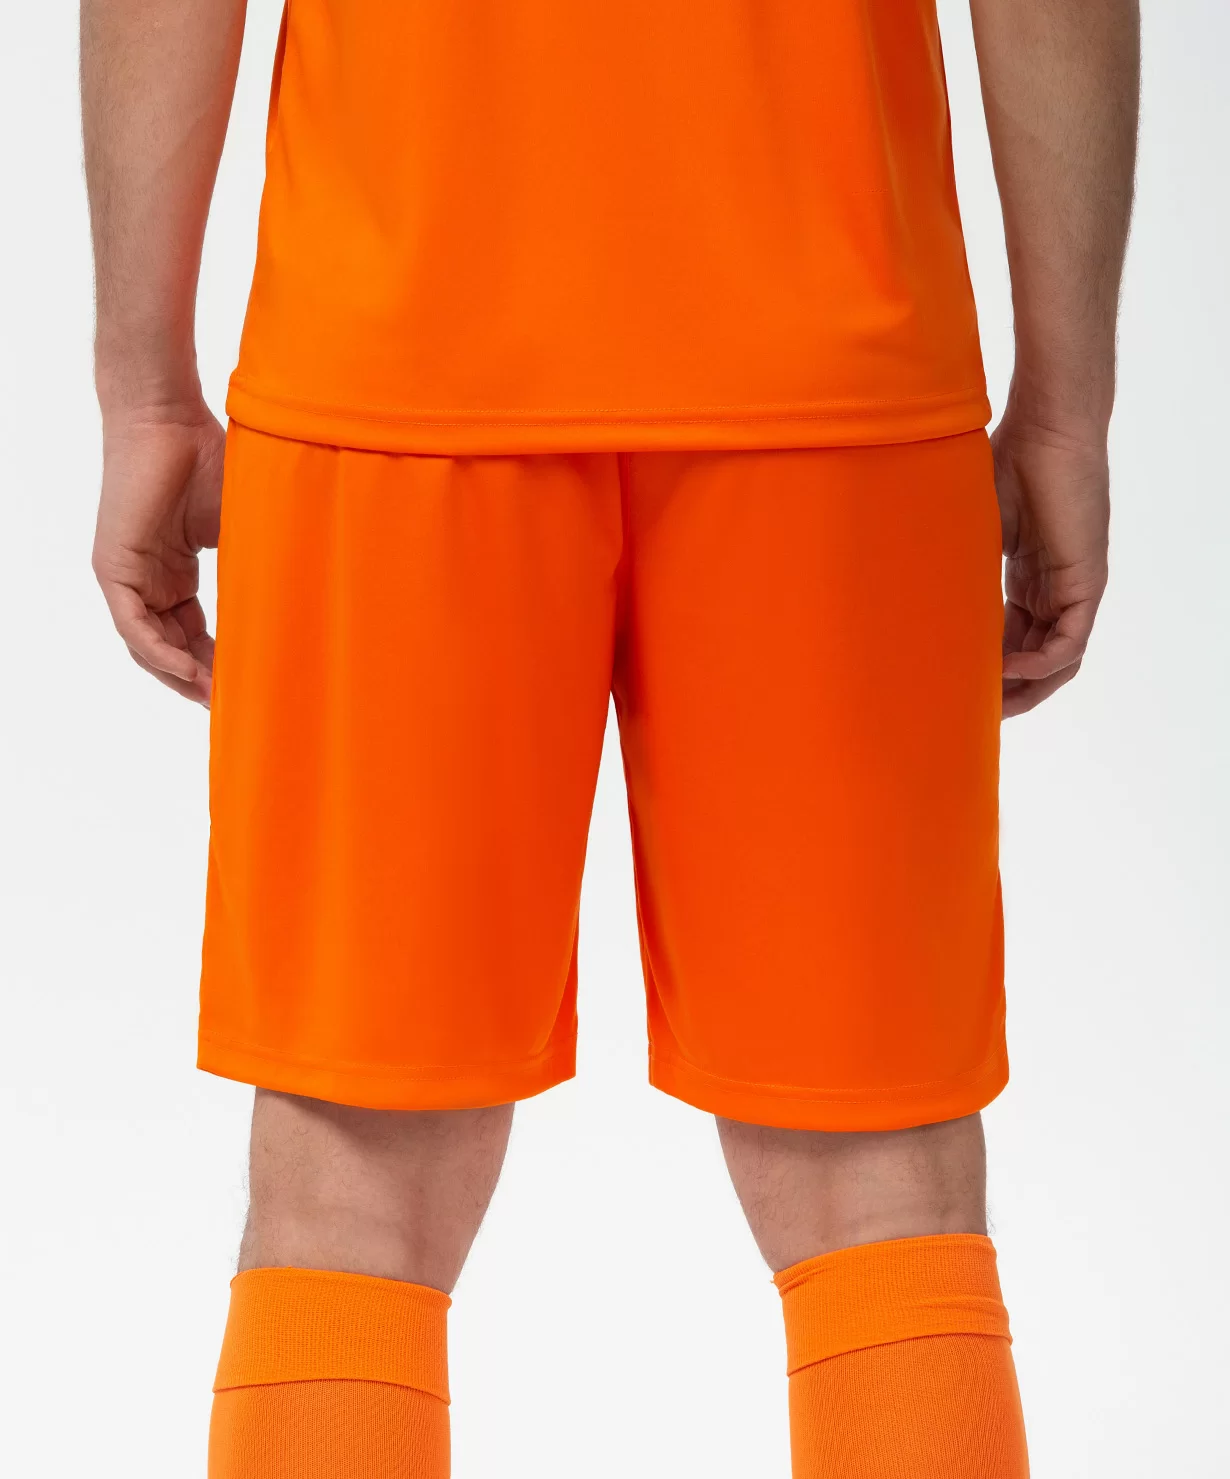 Фото Шорты игровые CAMP Classic Shorts, оранжевый/белый Jögel со склада магазина Спортев